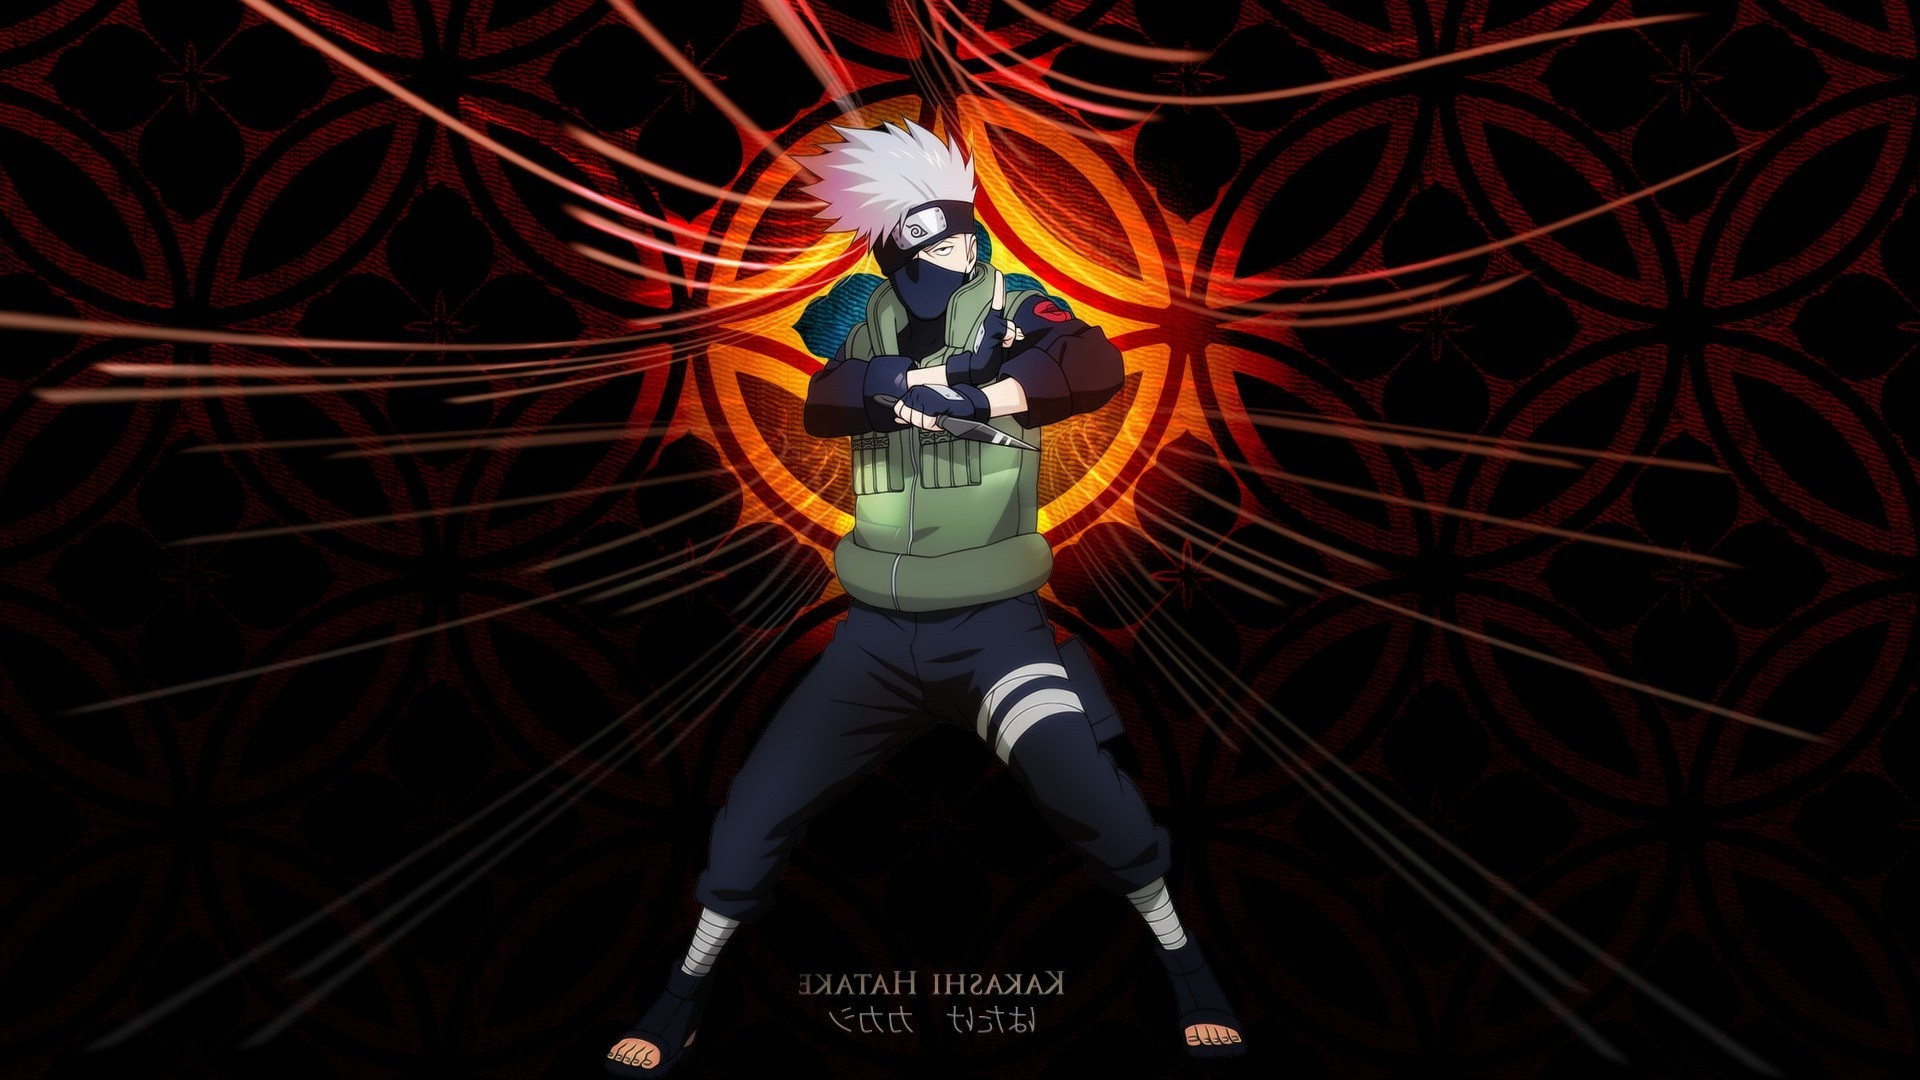 Hatake Kakashi, Anime, Naruto Shippuuden Wallpapers HD / Desktop and Mobile Backgrounds